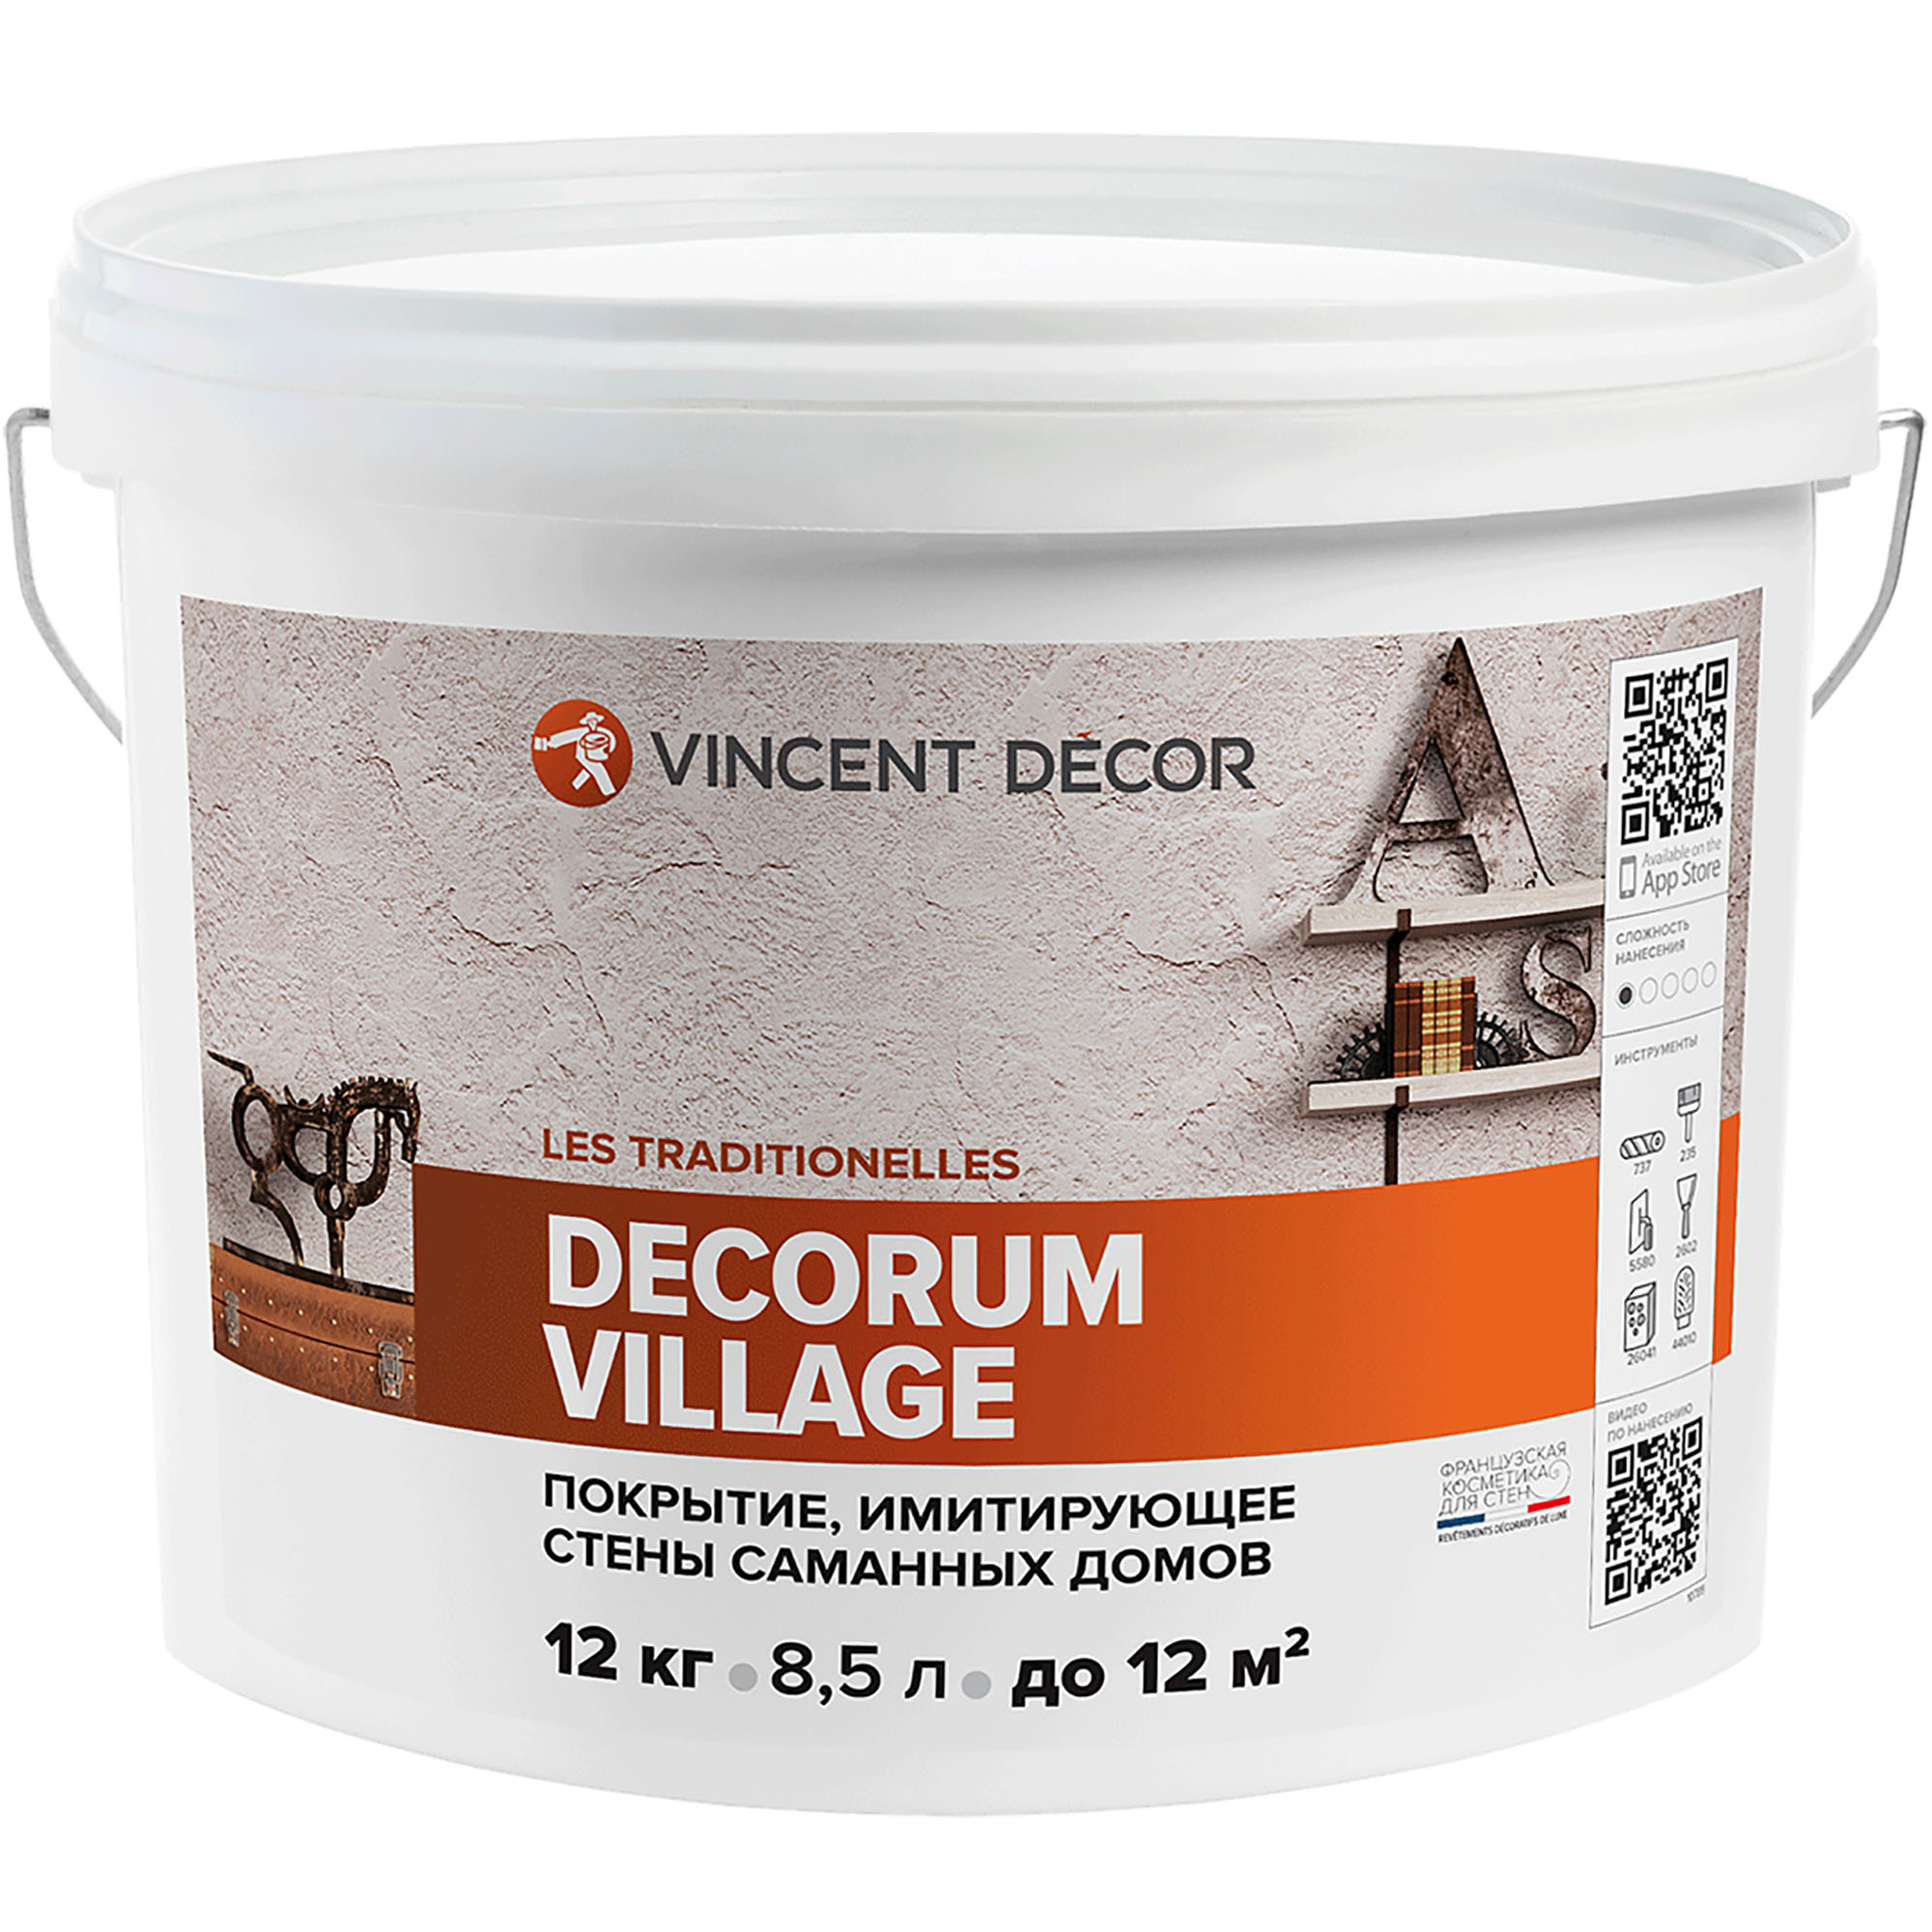 Декоративное покрытие Vincent Decor Decorum Village с эффектом, имитирующий стены саманных домов 12 кг